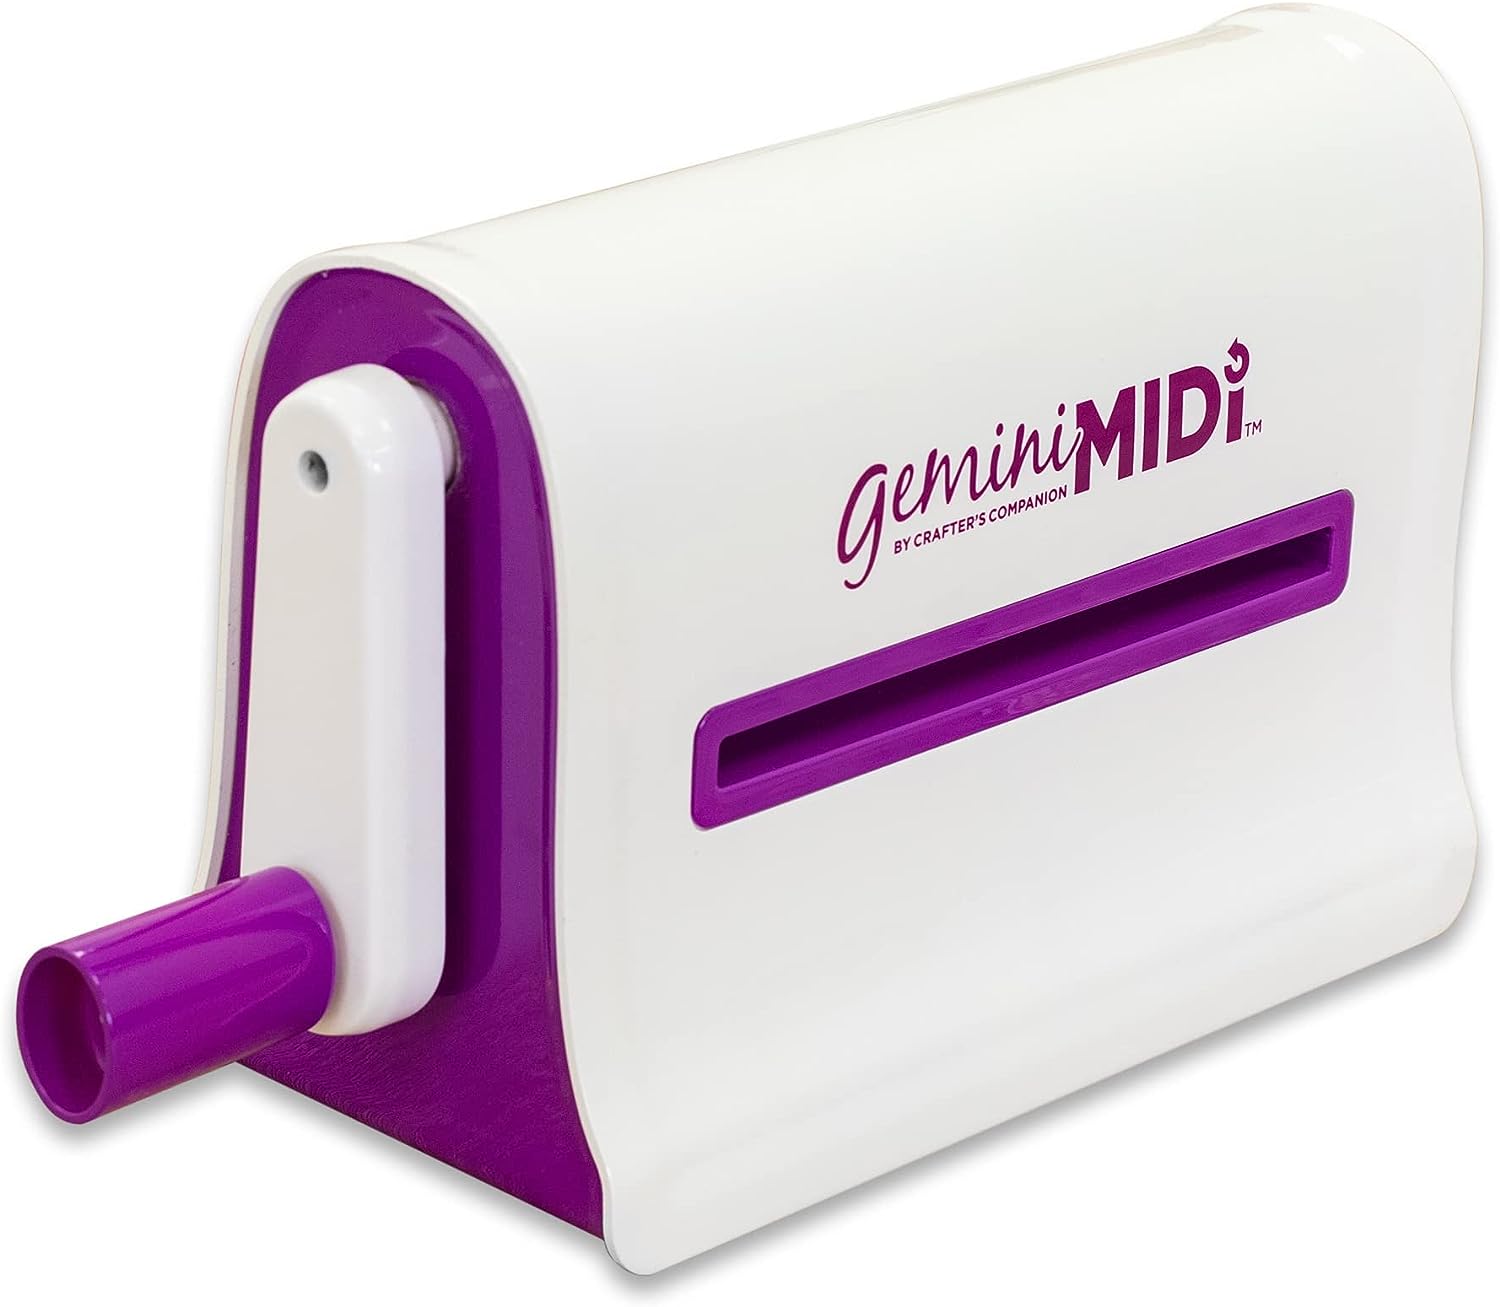 Gemini GEMMIDI-M-GLO Midi manuelle Stanz-und Prägemaschine für Scrapbooking, Kartenherstellung und Basteln, 15,2 x 22,9 cm große Öffnungsplatte, Weiß, One Size